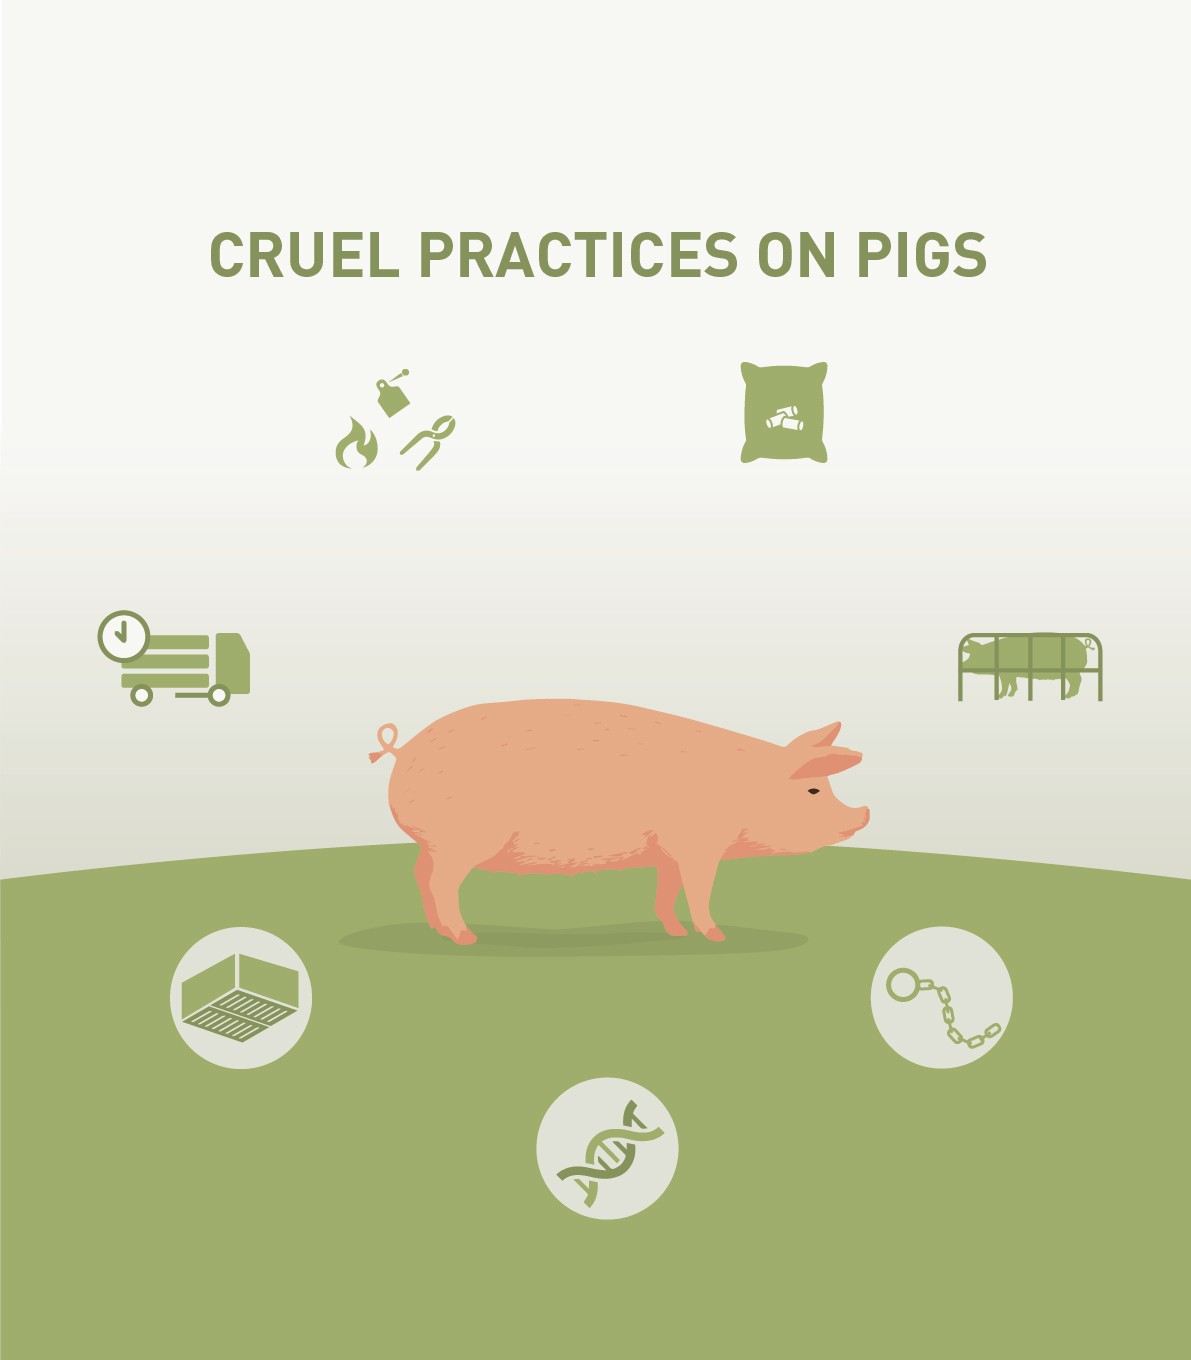 Cruel practices on pigs